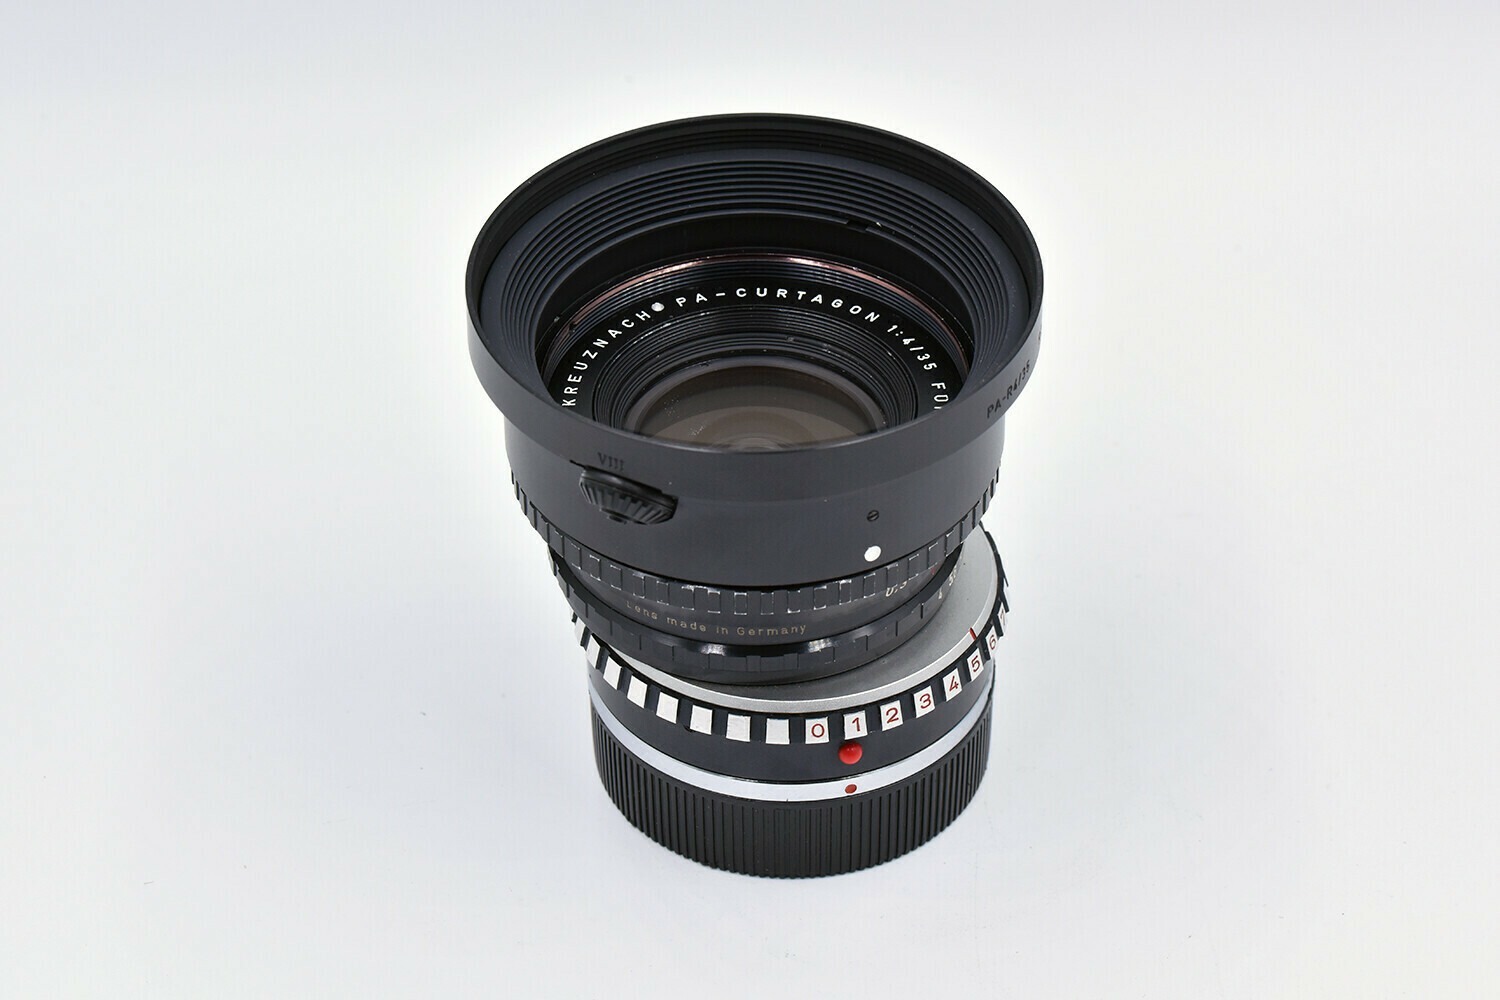 Leica Schneider Objectif R Curtagon 35 mm f/4 PC - 31812 2